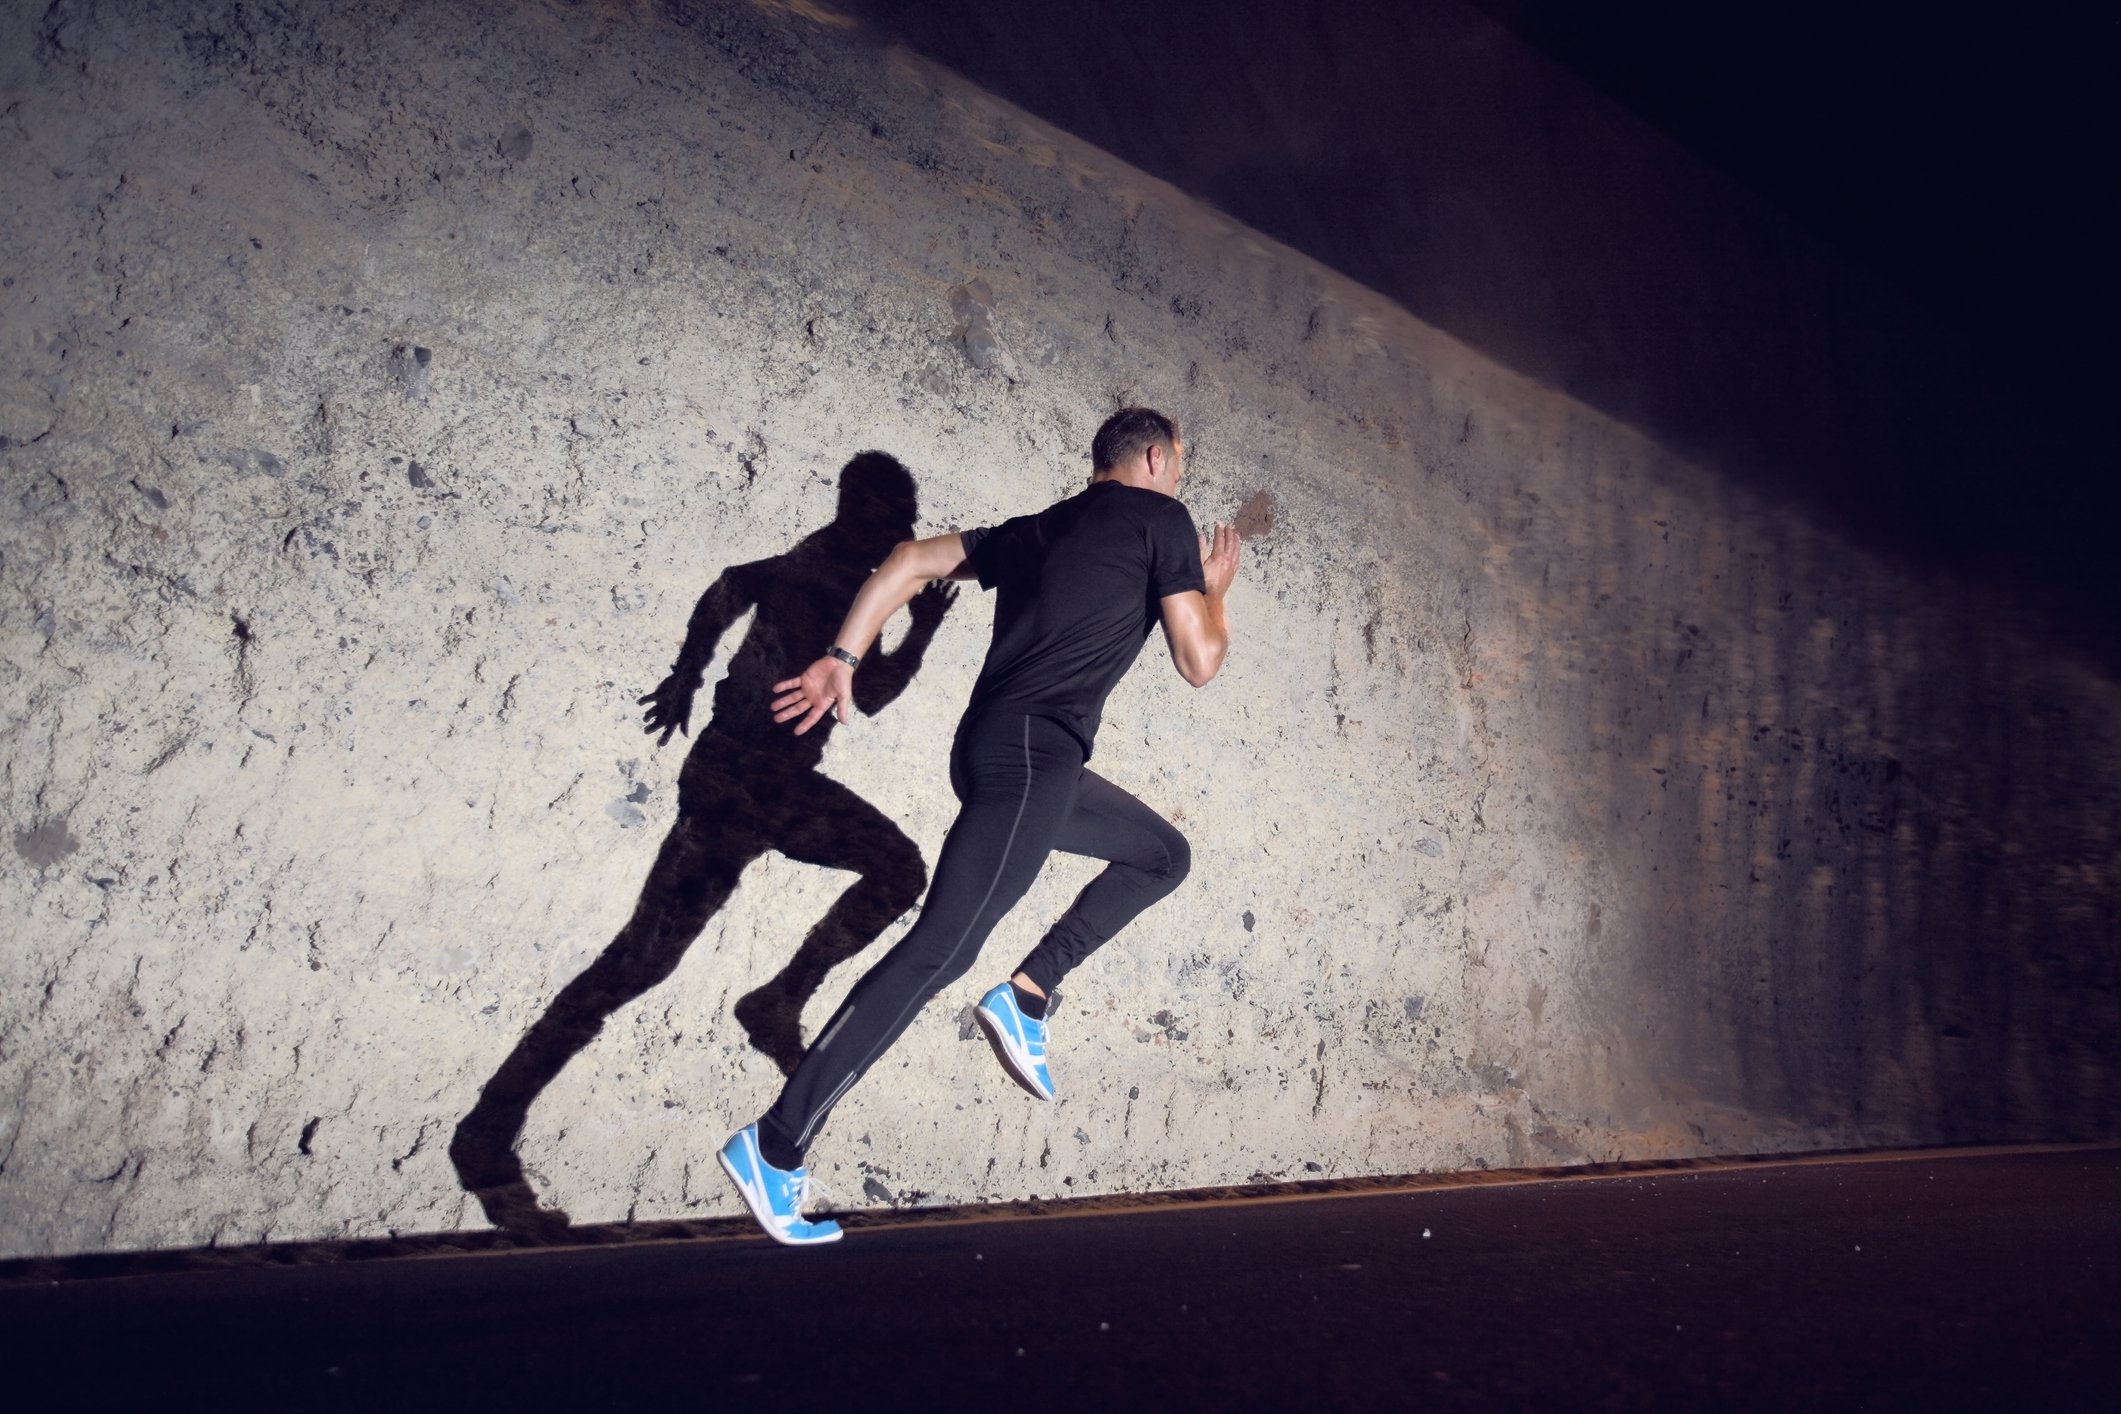 Foto eines Mannes, der bei Nacht sprintet | Quelle: Getty Images